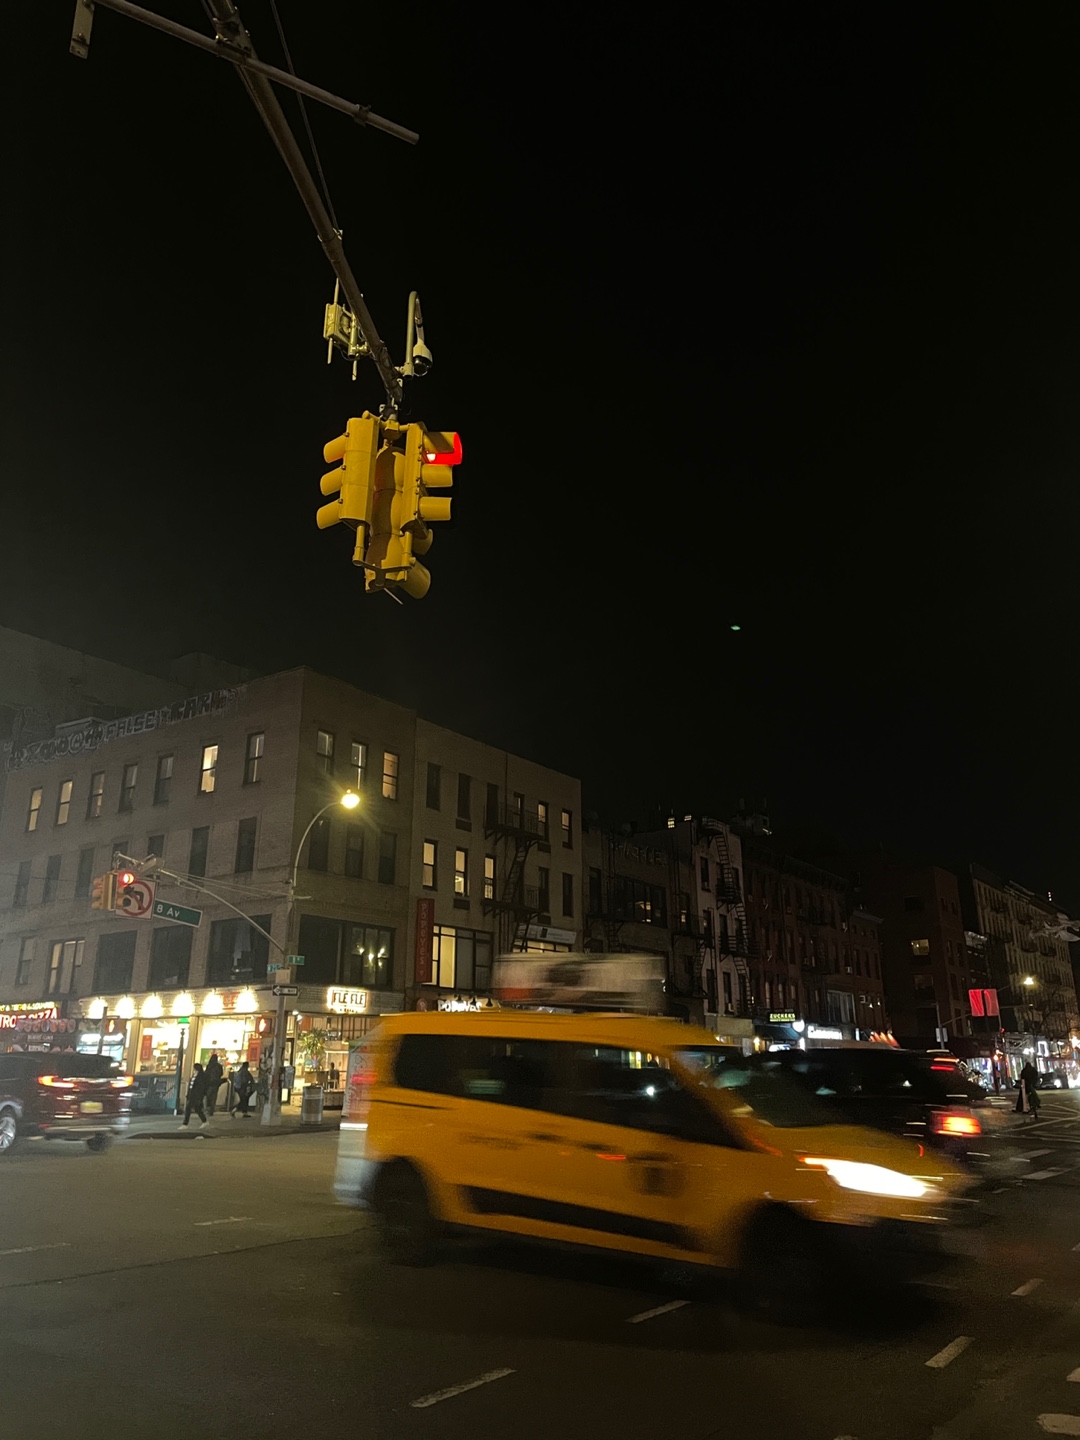 뉴욕은 노랑을 매우 사랑하는 것 같아요